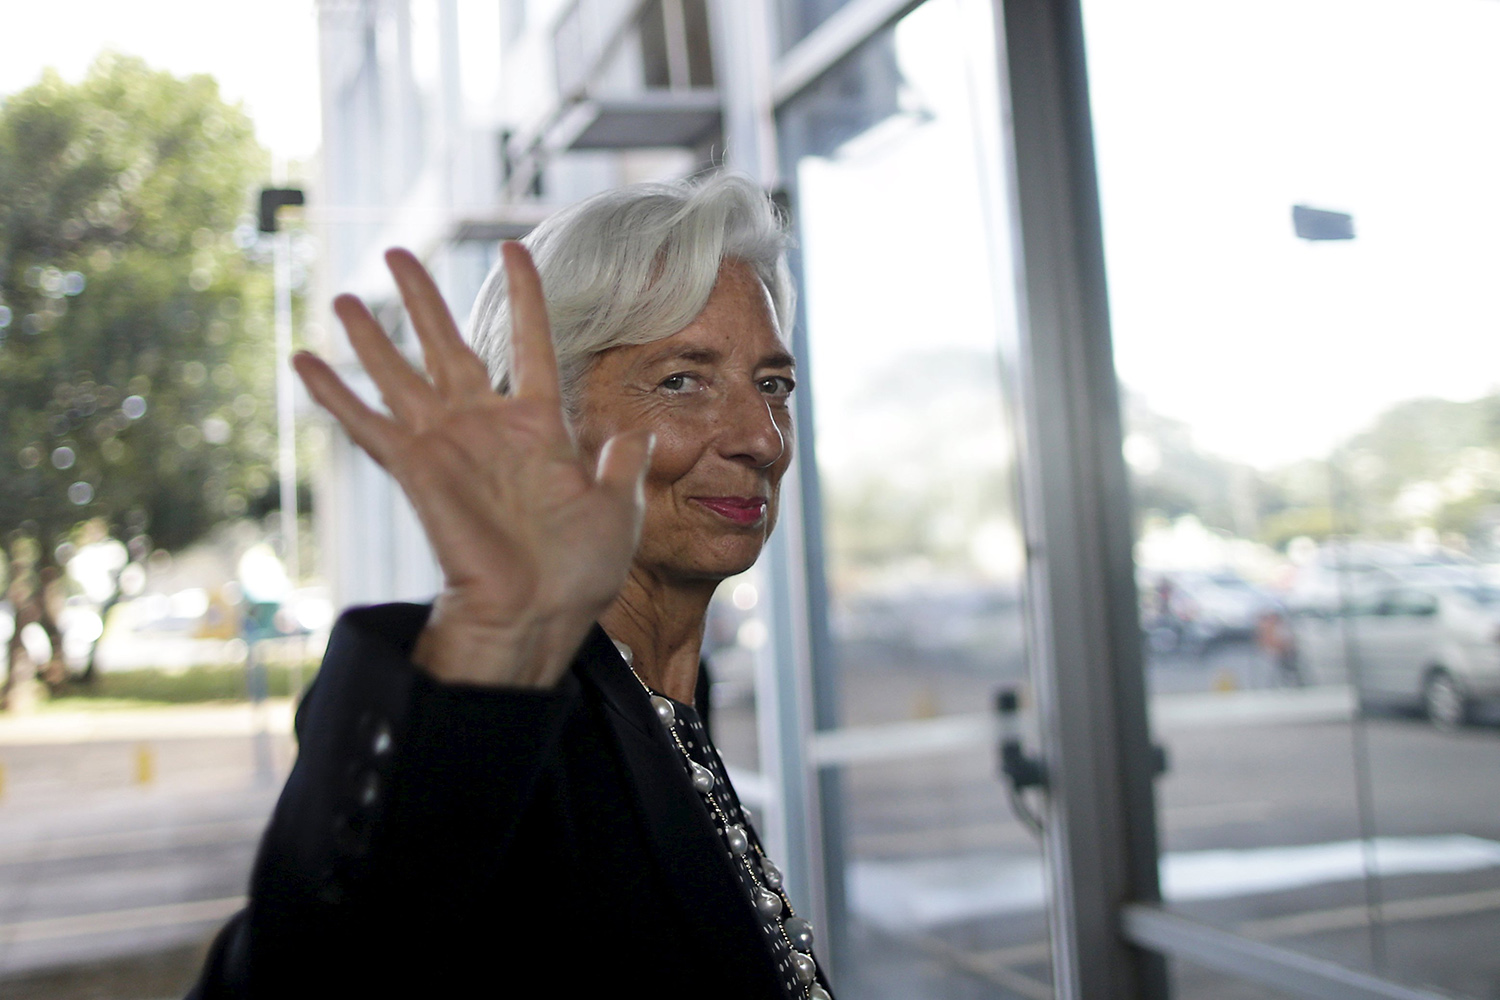 El FMI abandona las negociaciones con Grecia